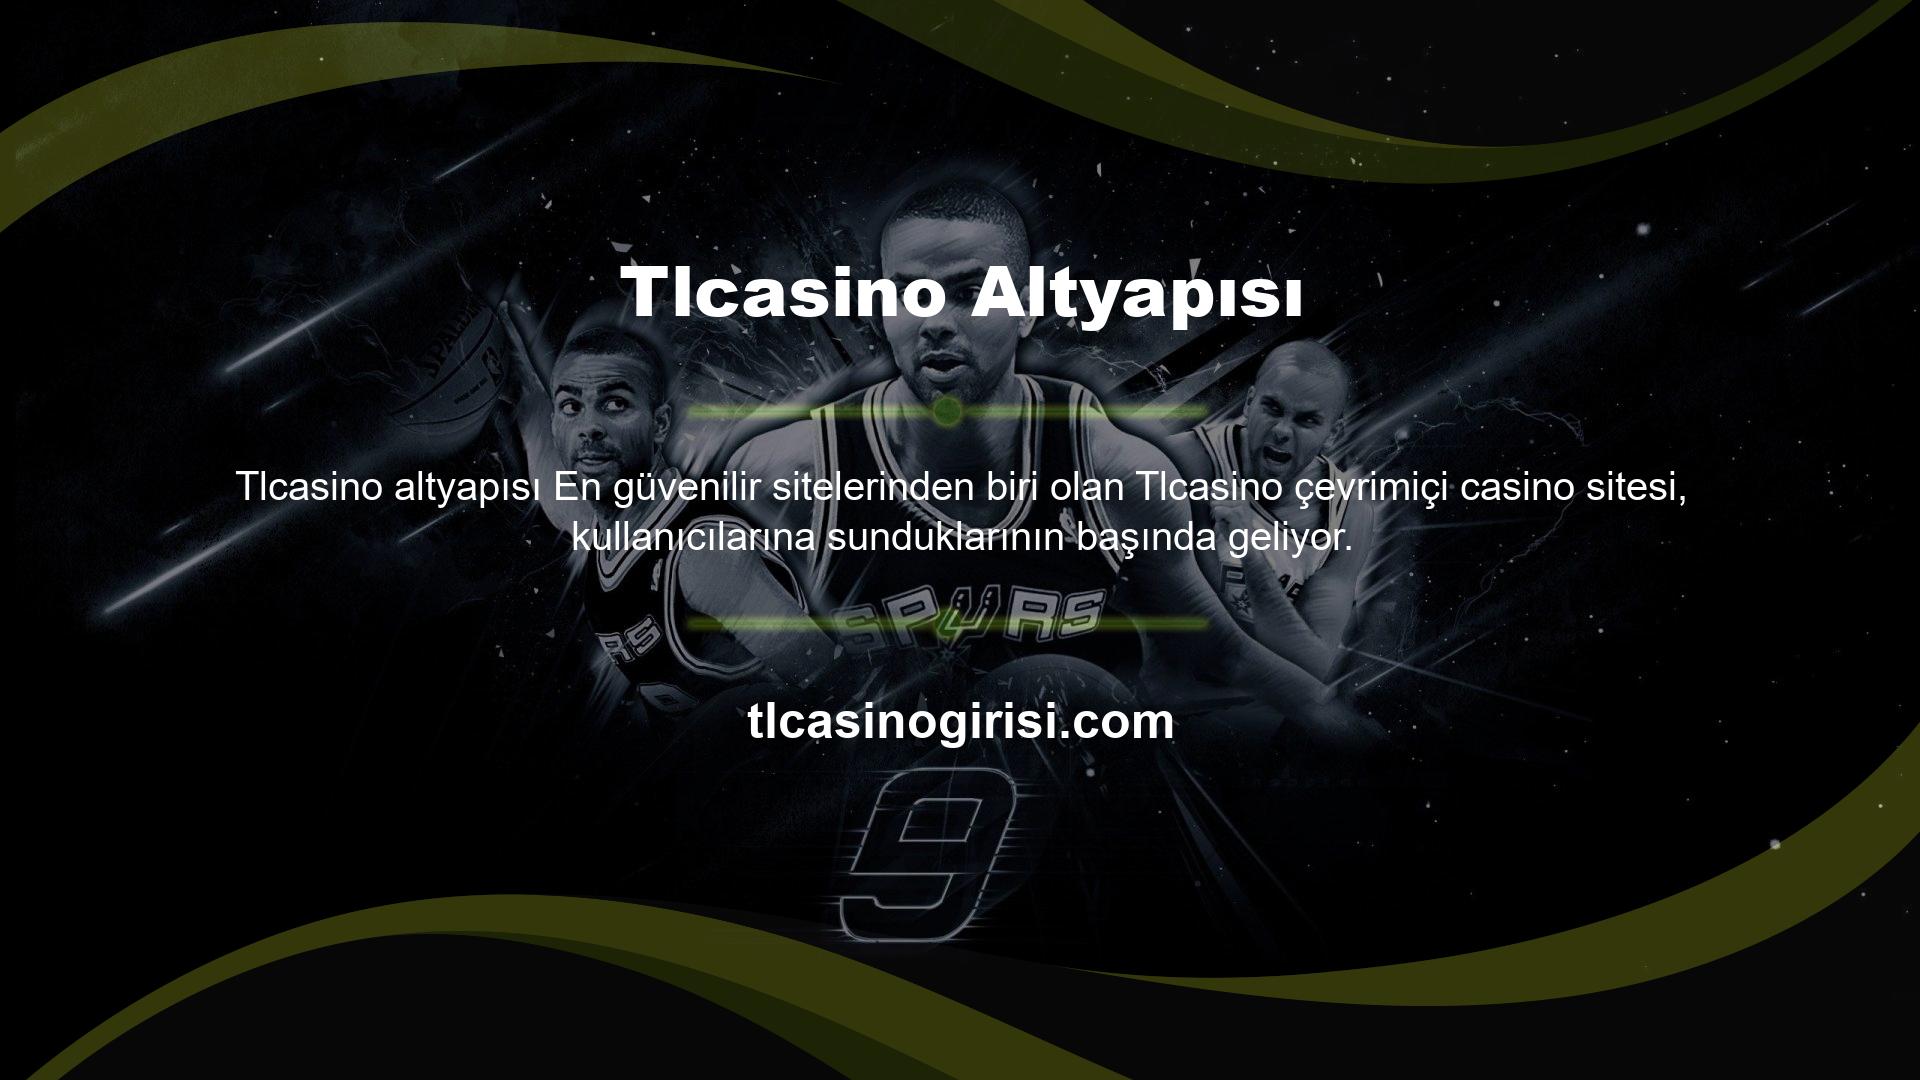 Tlcasino altyapısı Teknoloji Altyapısı tarafından sağlanmaktadır